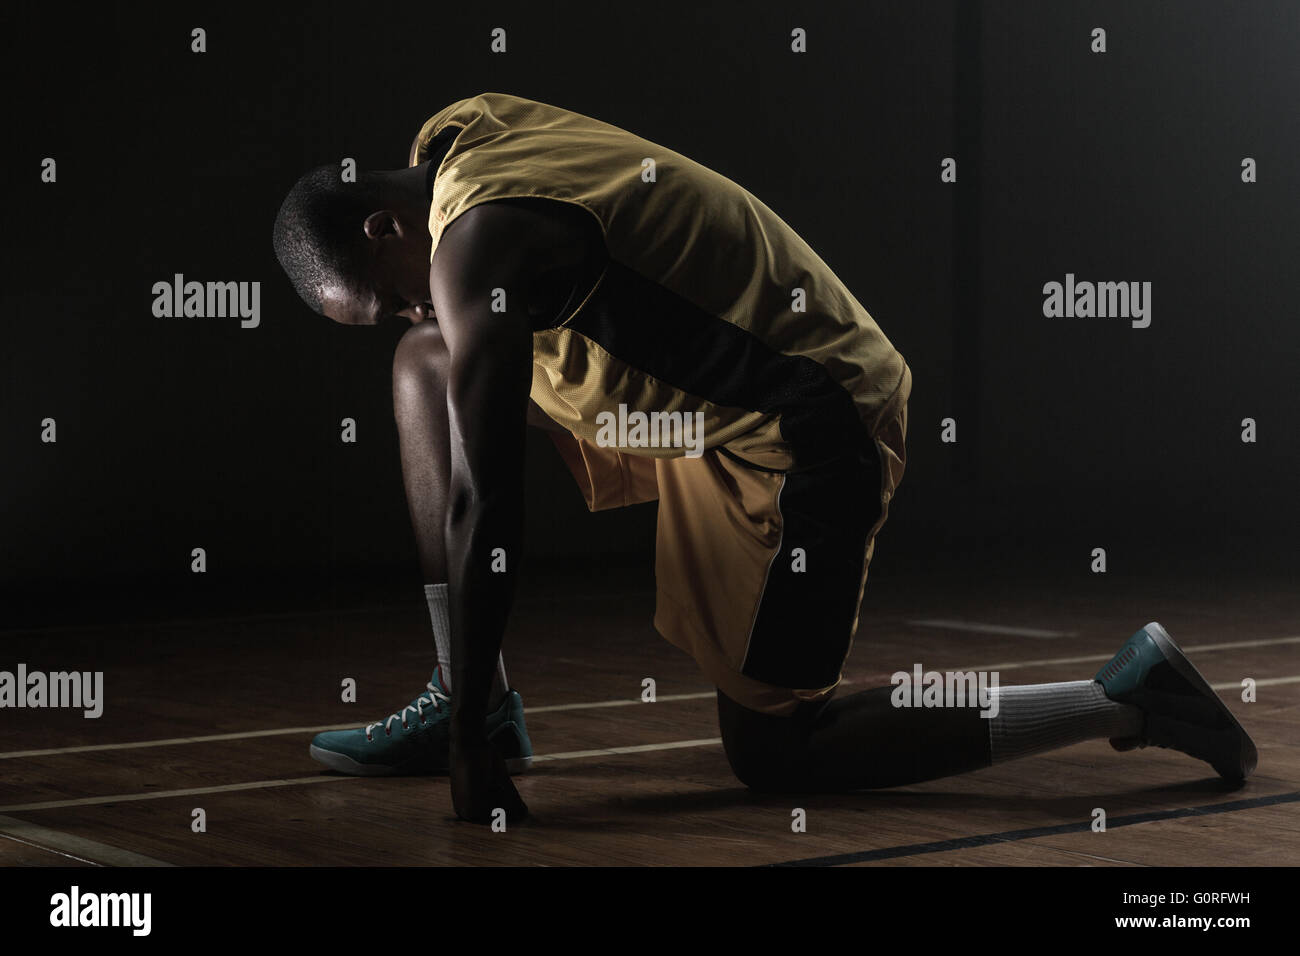 Basketballspieler Vorbereitung zu spielen mit Knie auf dem Boden und den Kopf gesenkt Stockfoto